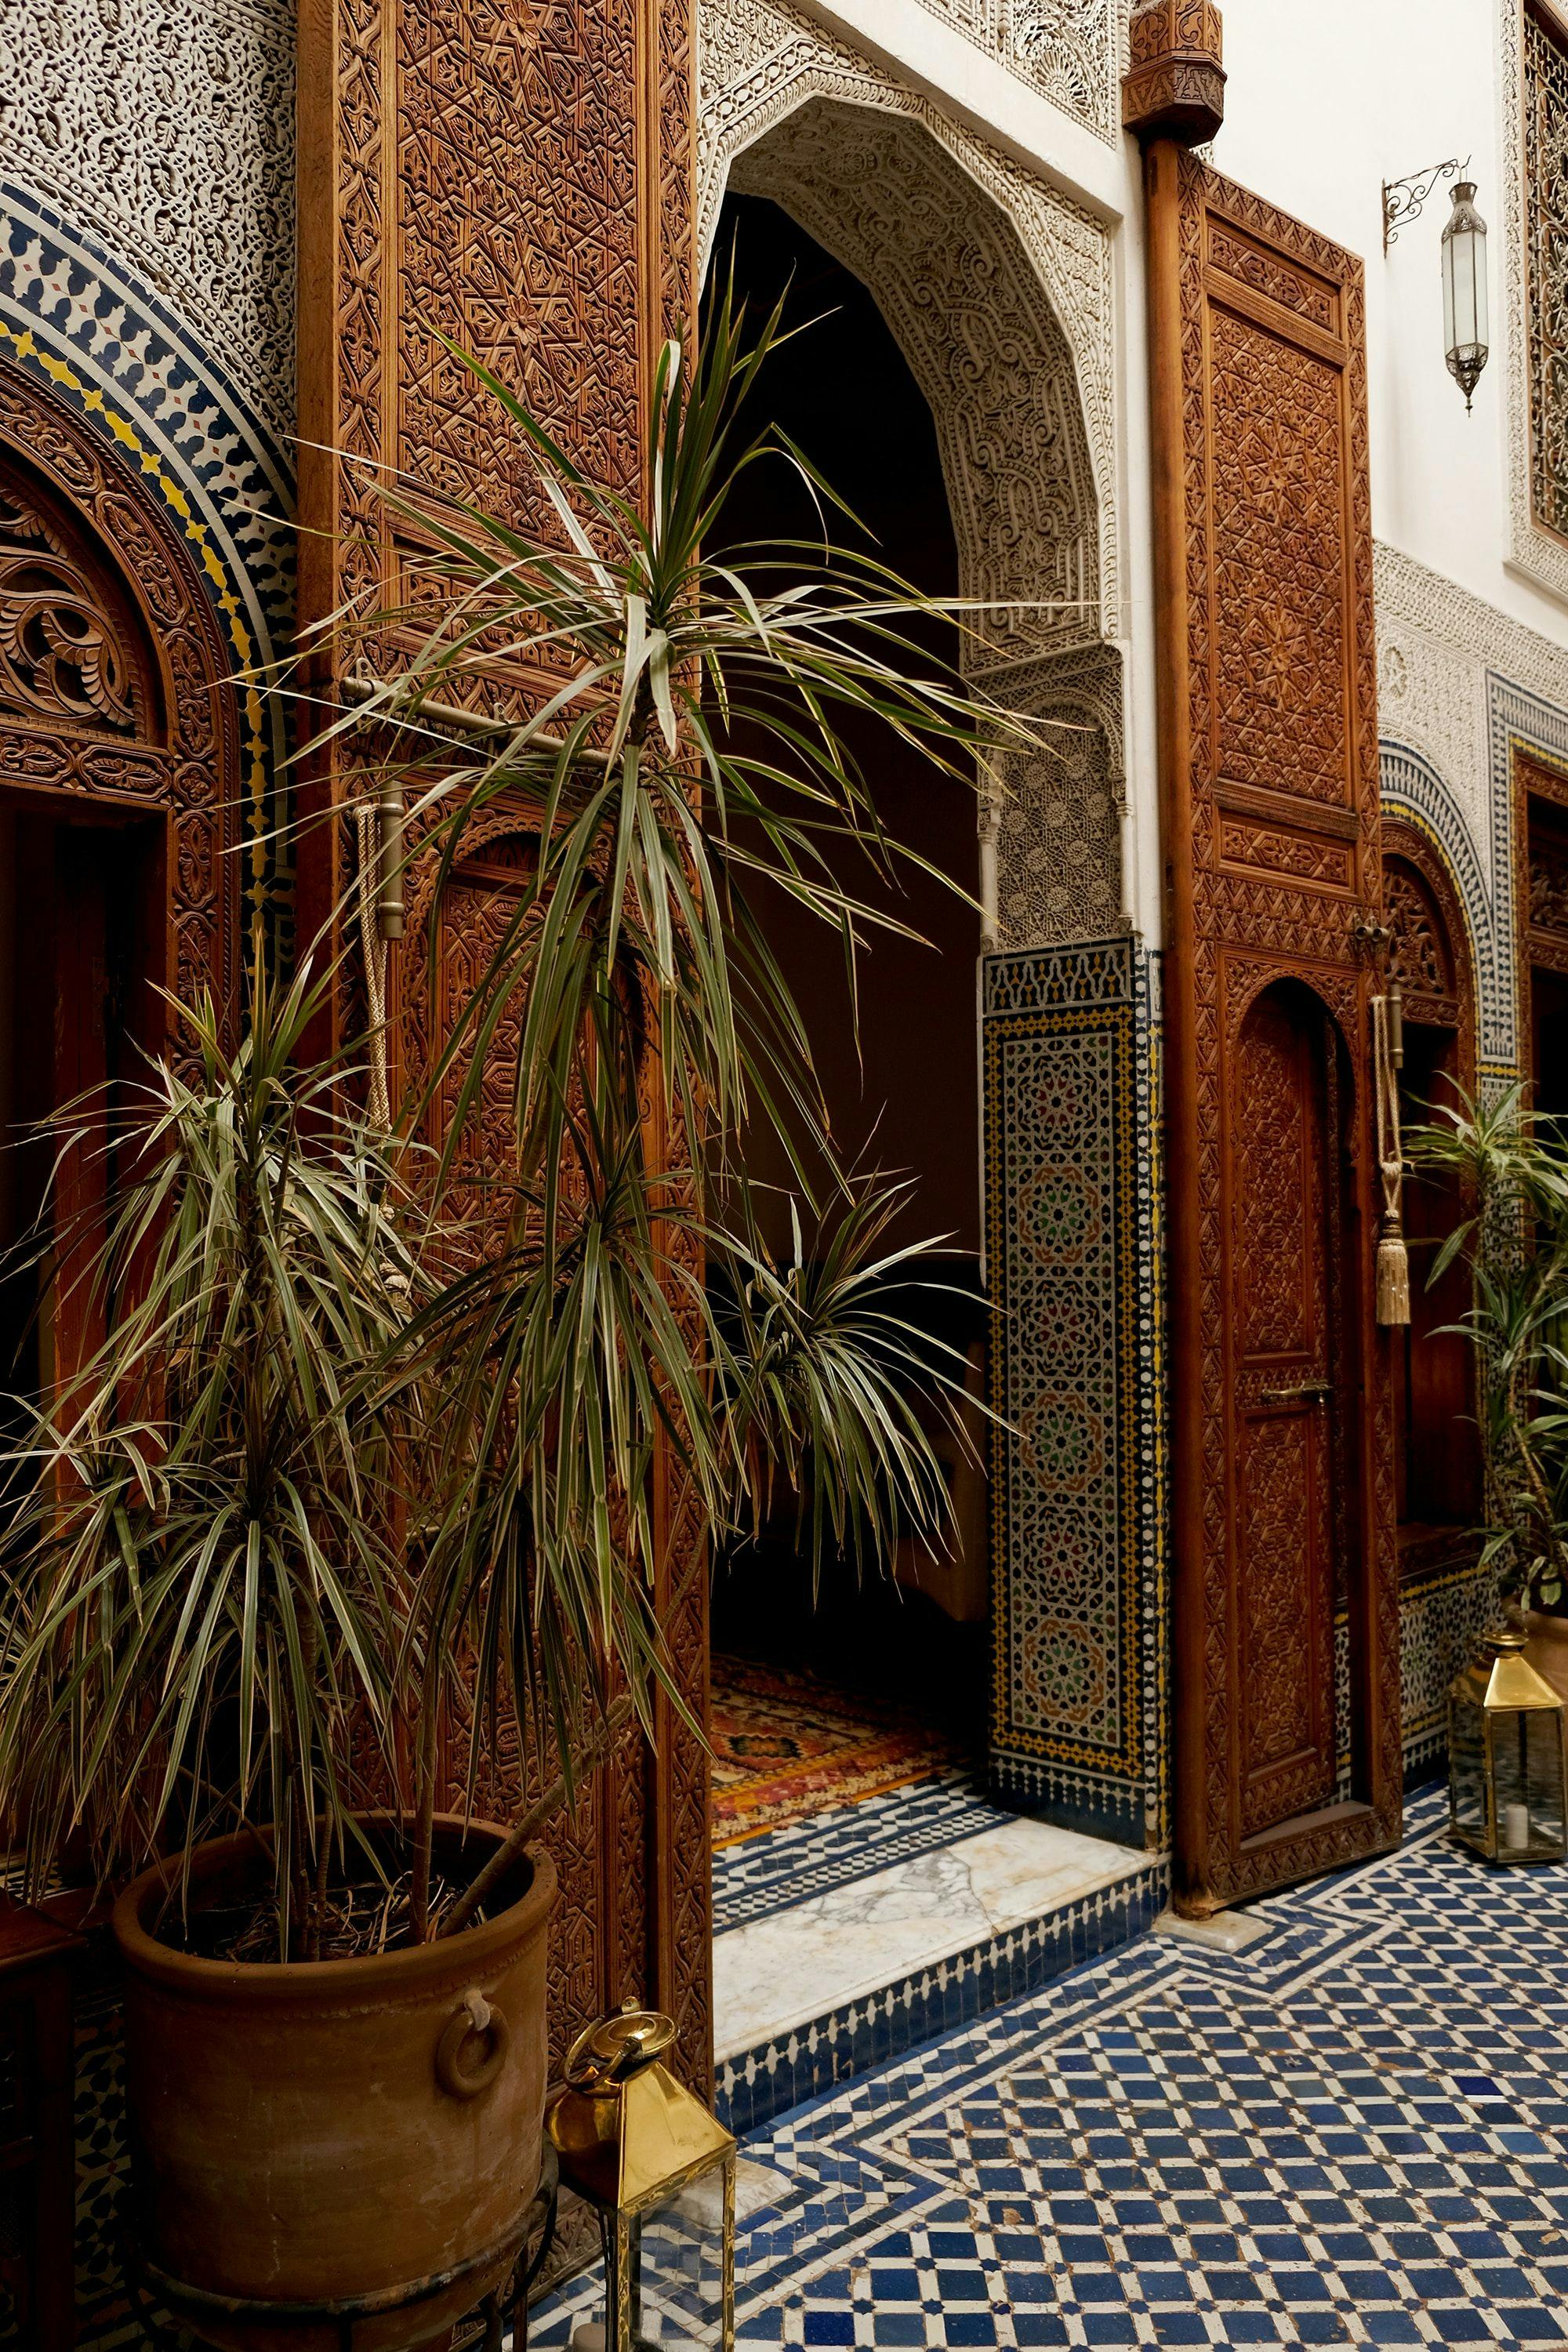 Doorway in Fes, Morocco.